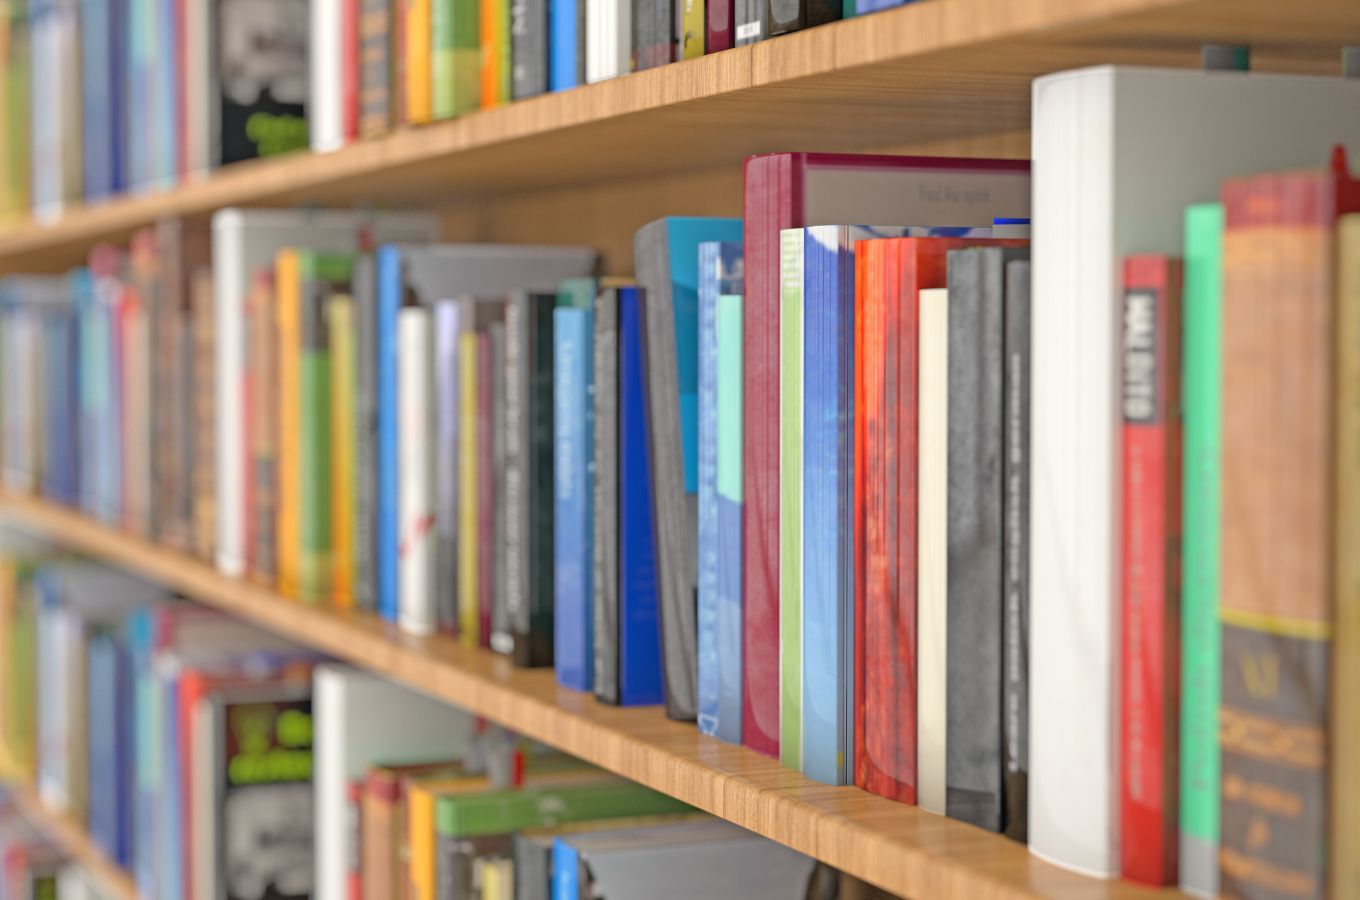 A shelf of colorful books